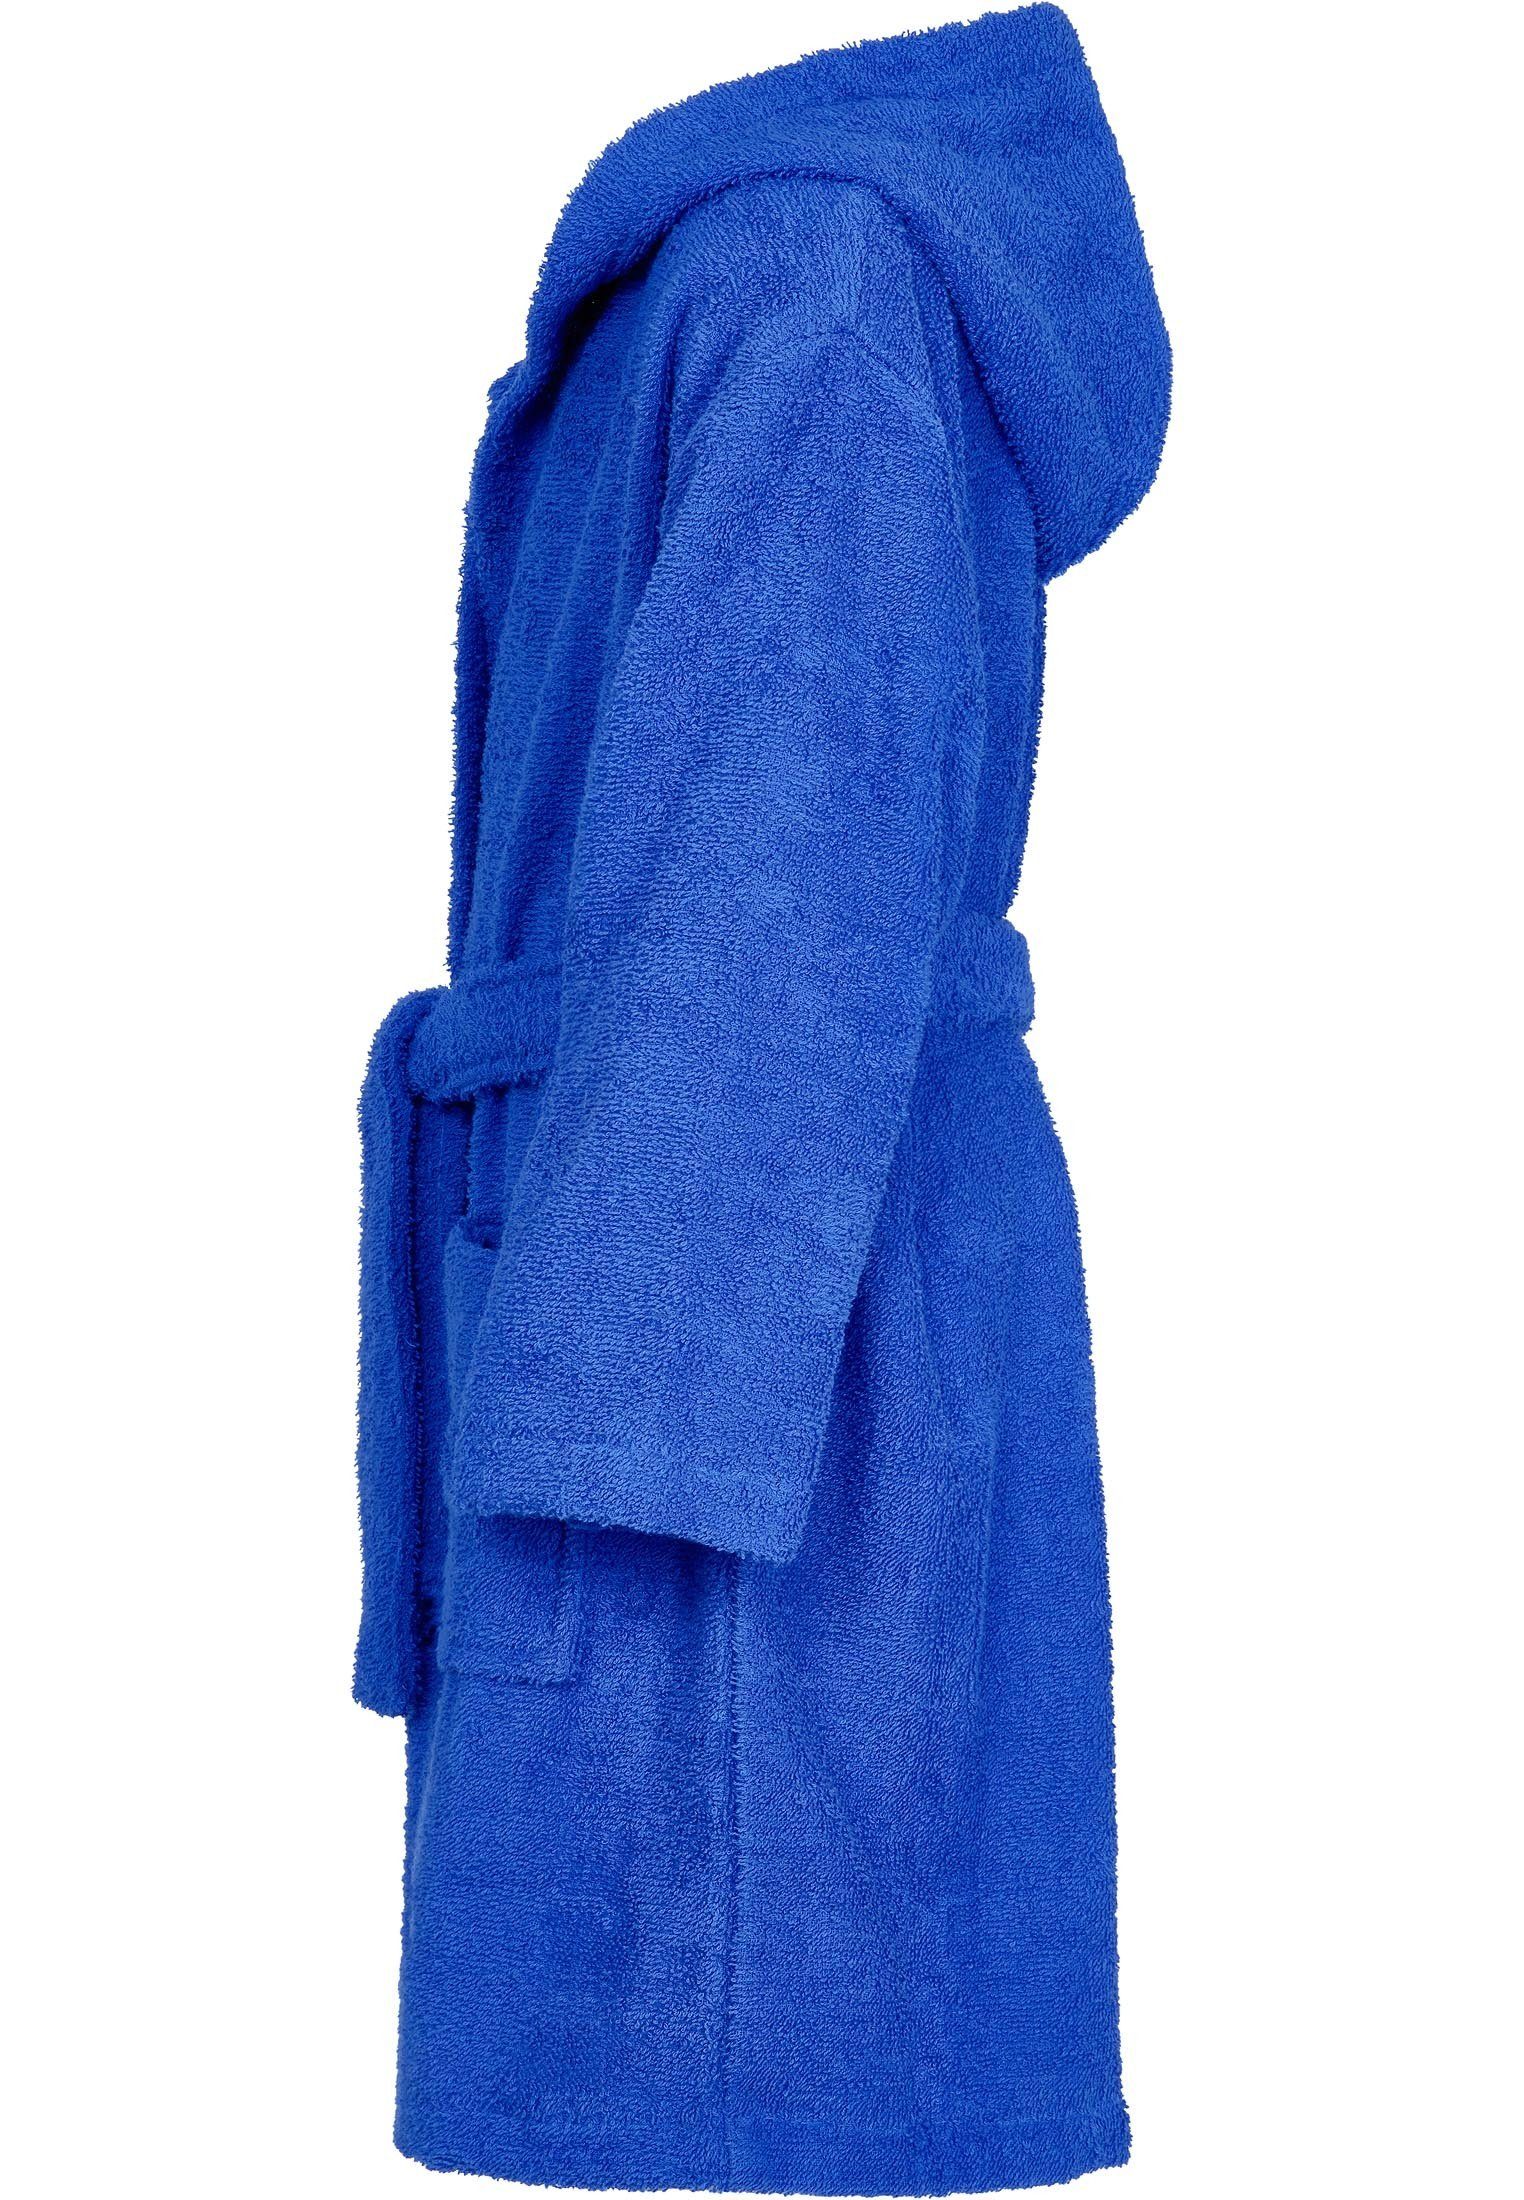 Jungen Kinderbademantel Blau für Mädchen und Playshoes Frotte-Bademantel